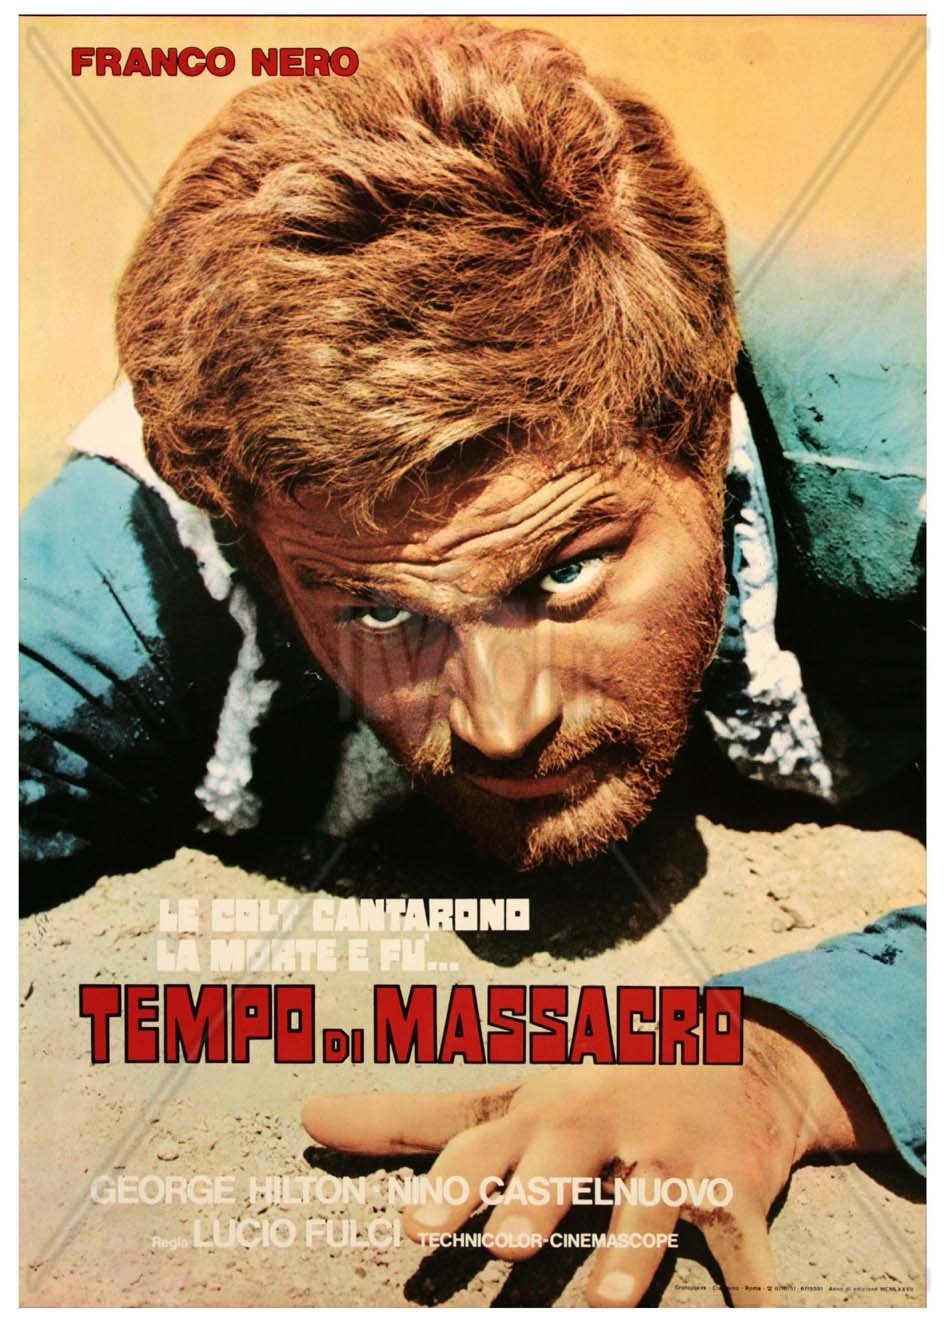 Italian poster of the movie Le Colt cantarono la morte e fu... tempo di massacro